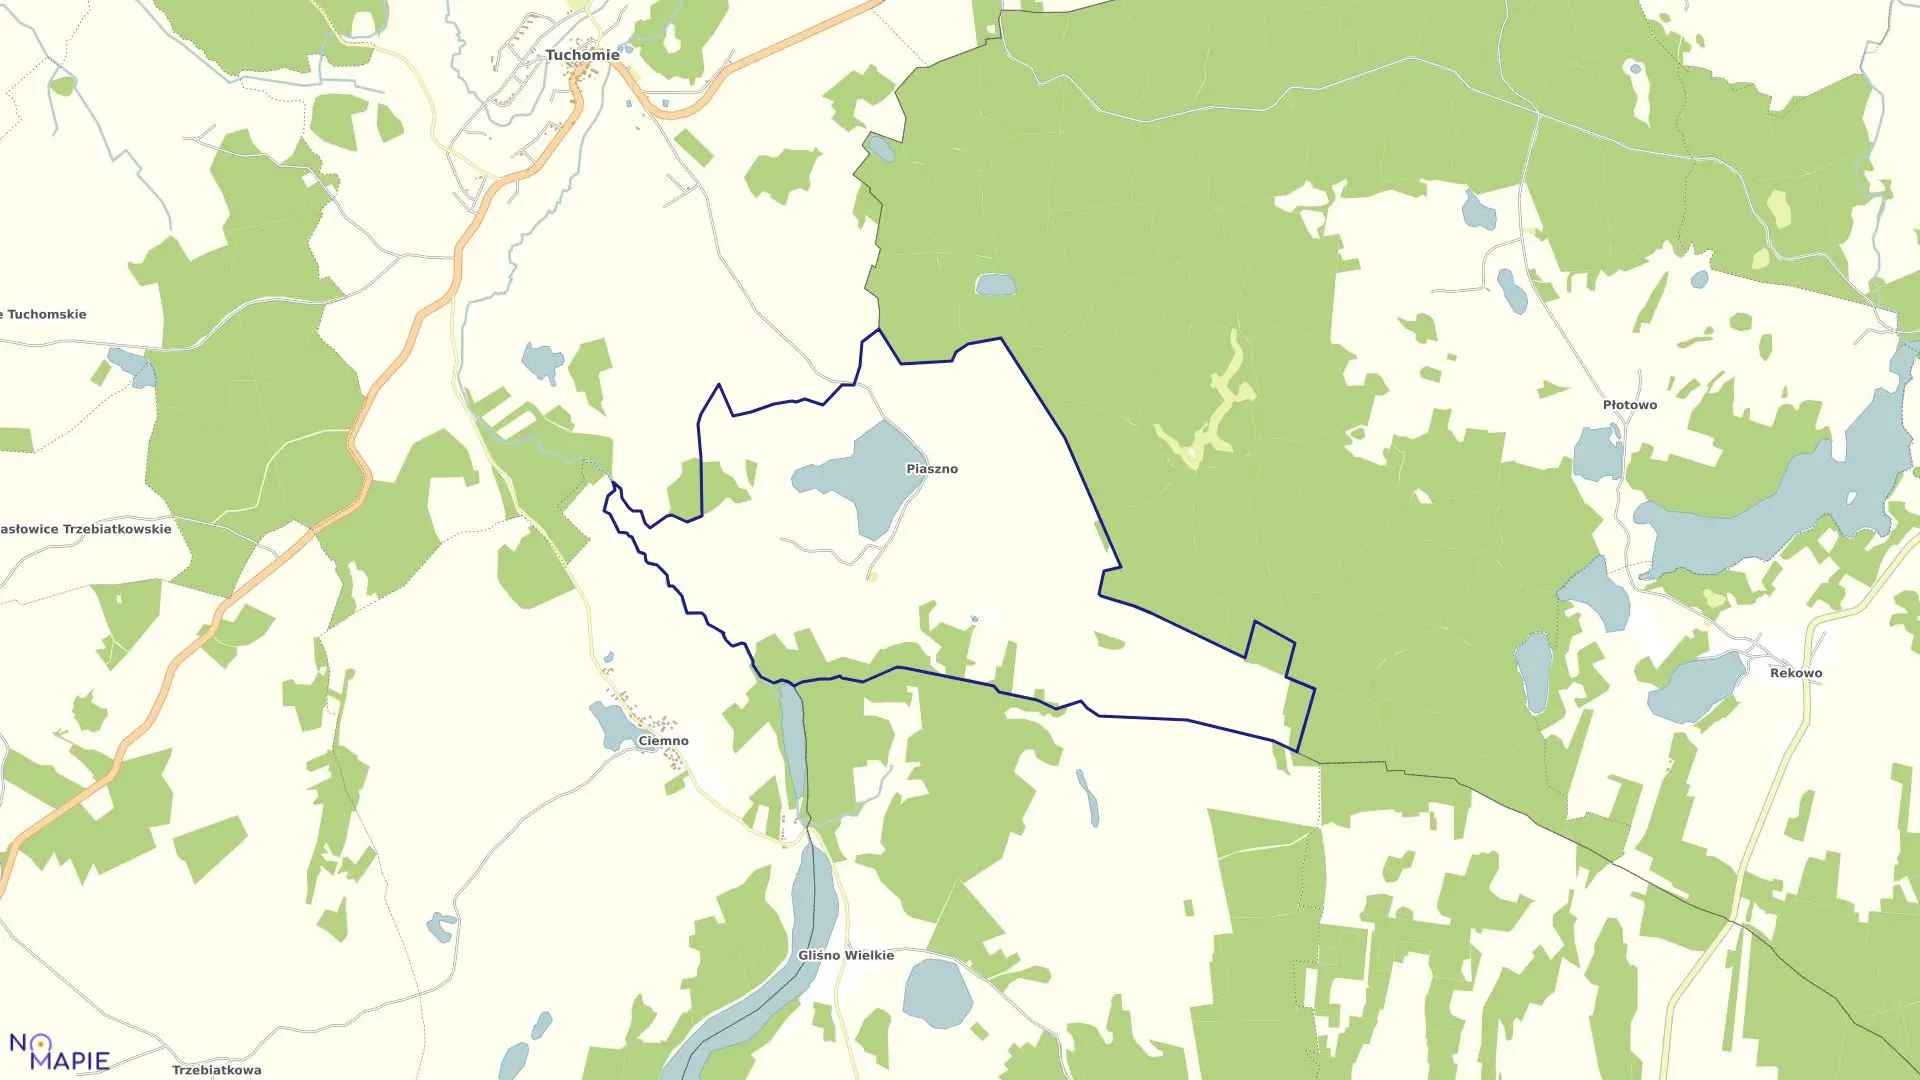 Mapa obrębu Piaszno w gminie Tuchomie